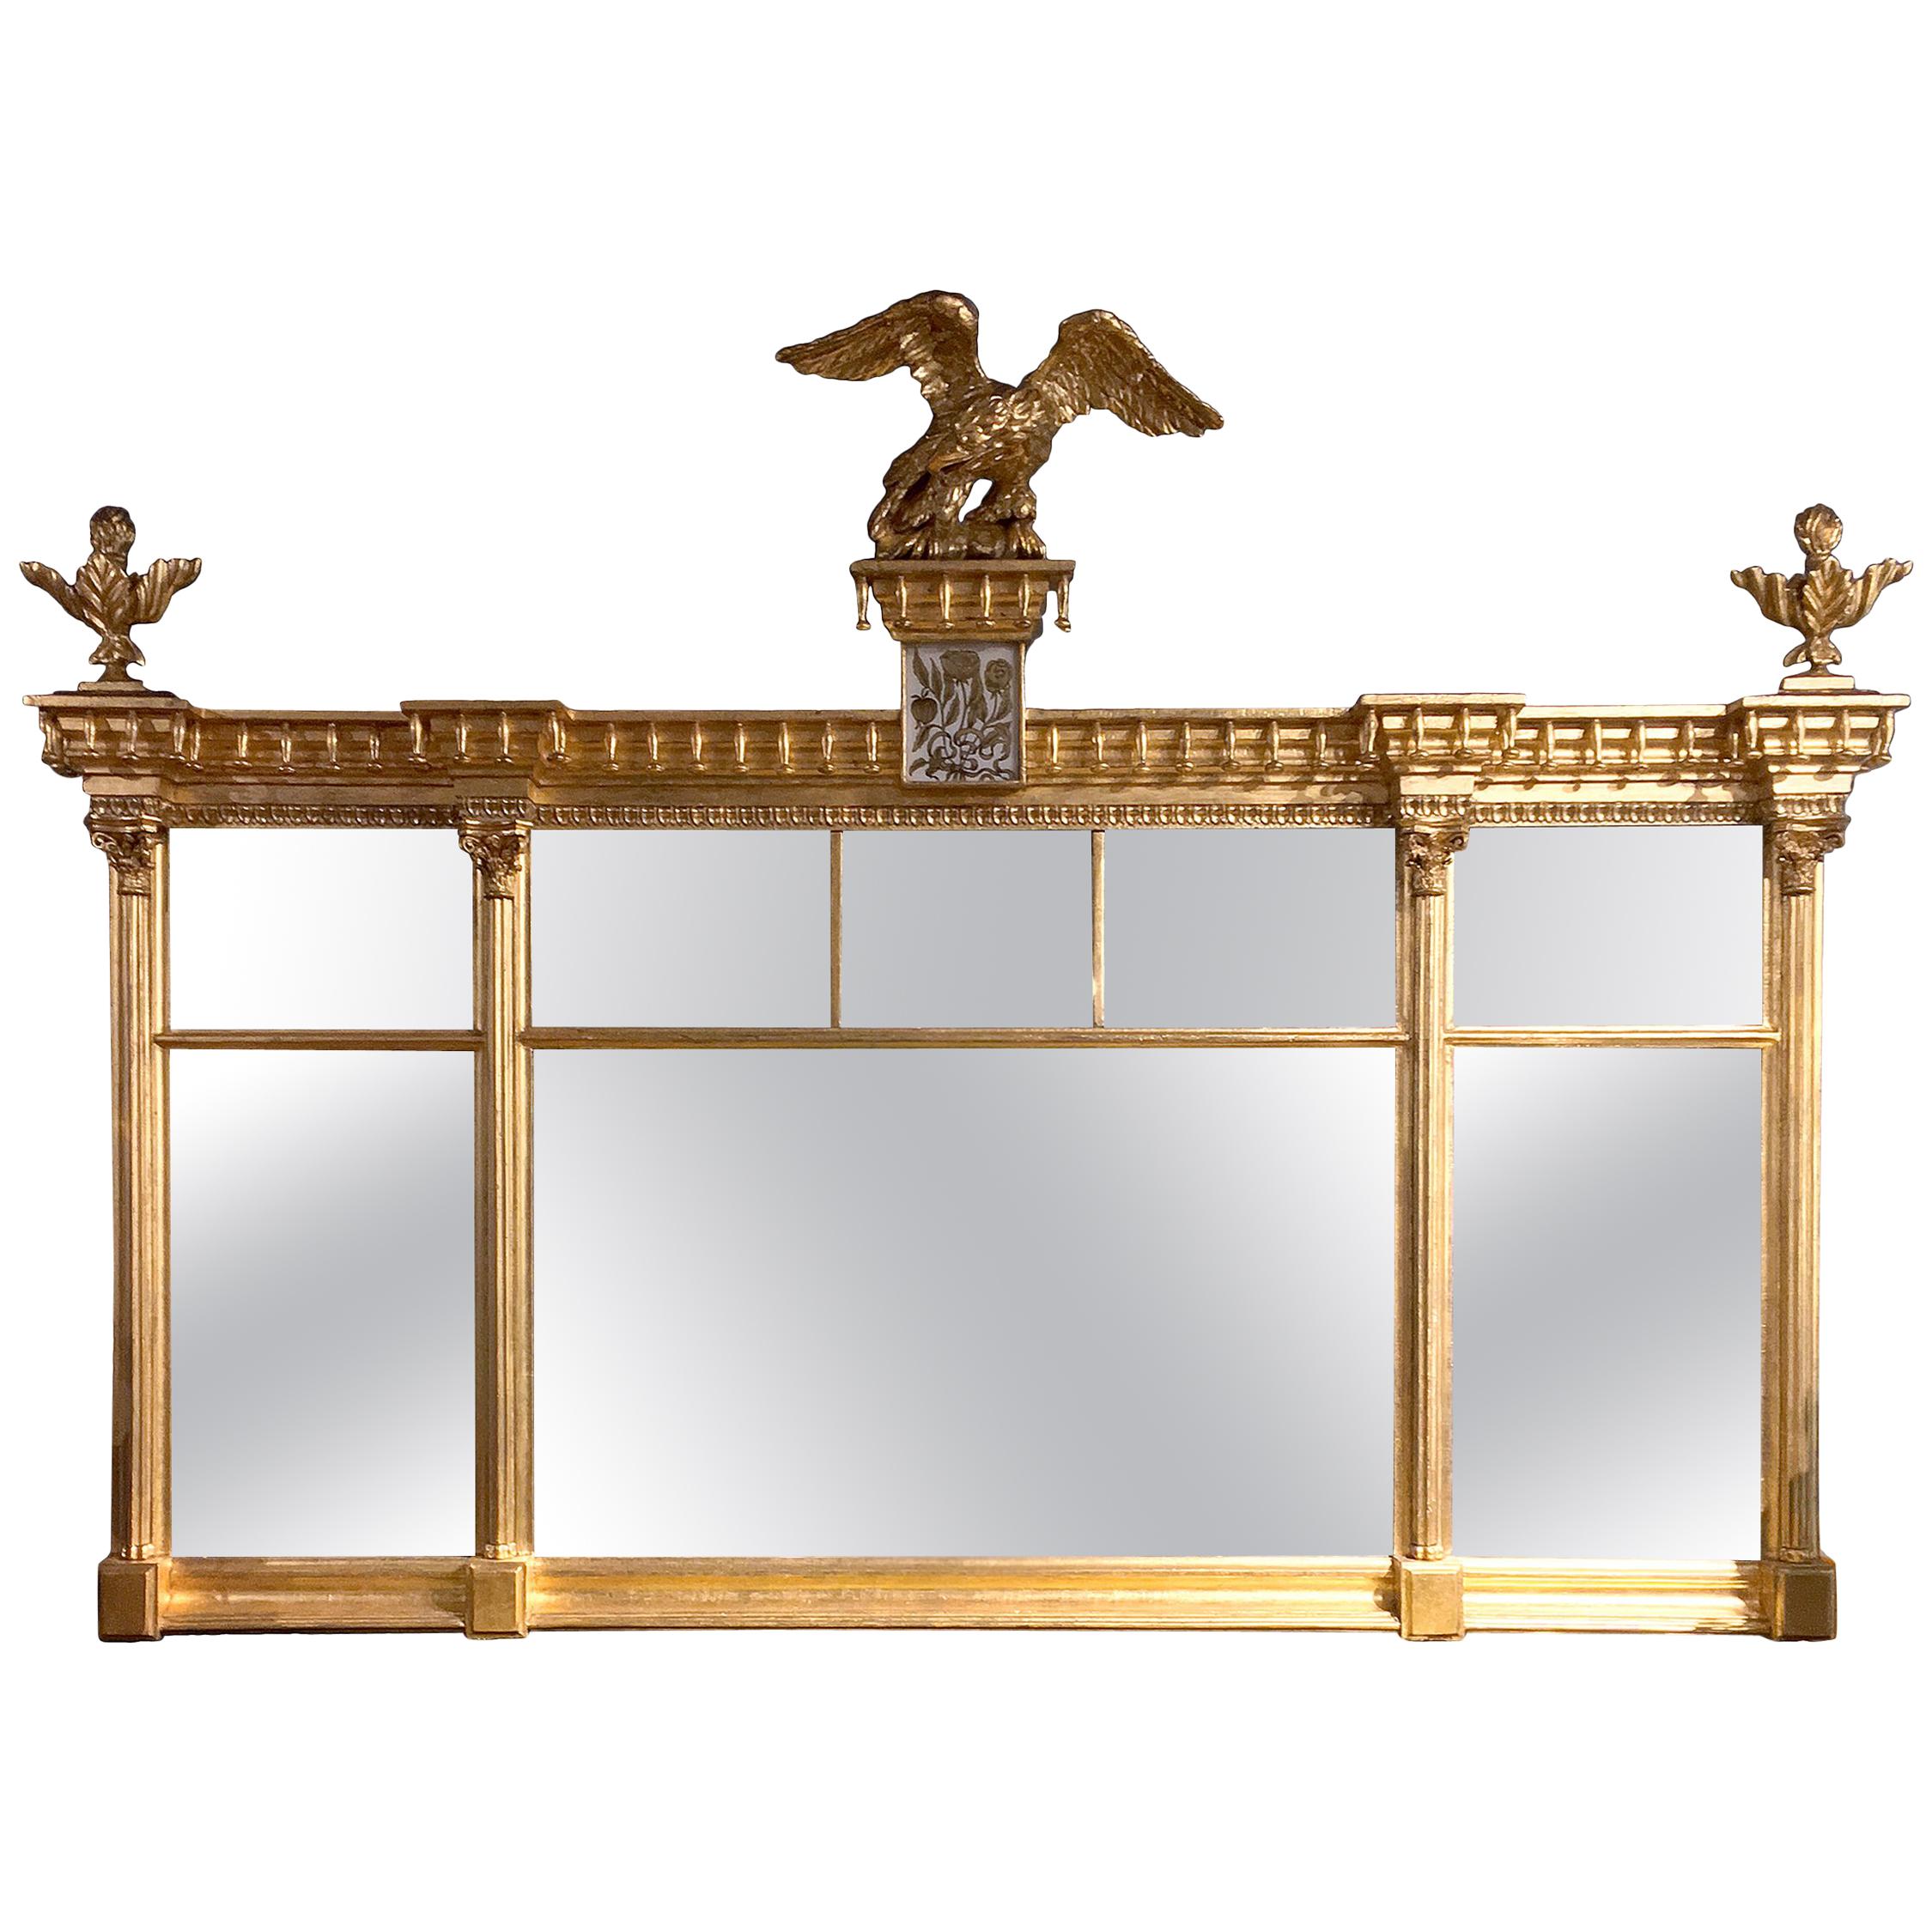 Miroir à trumeau doré américain du début du XIXe siècle, style fédéral américain